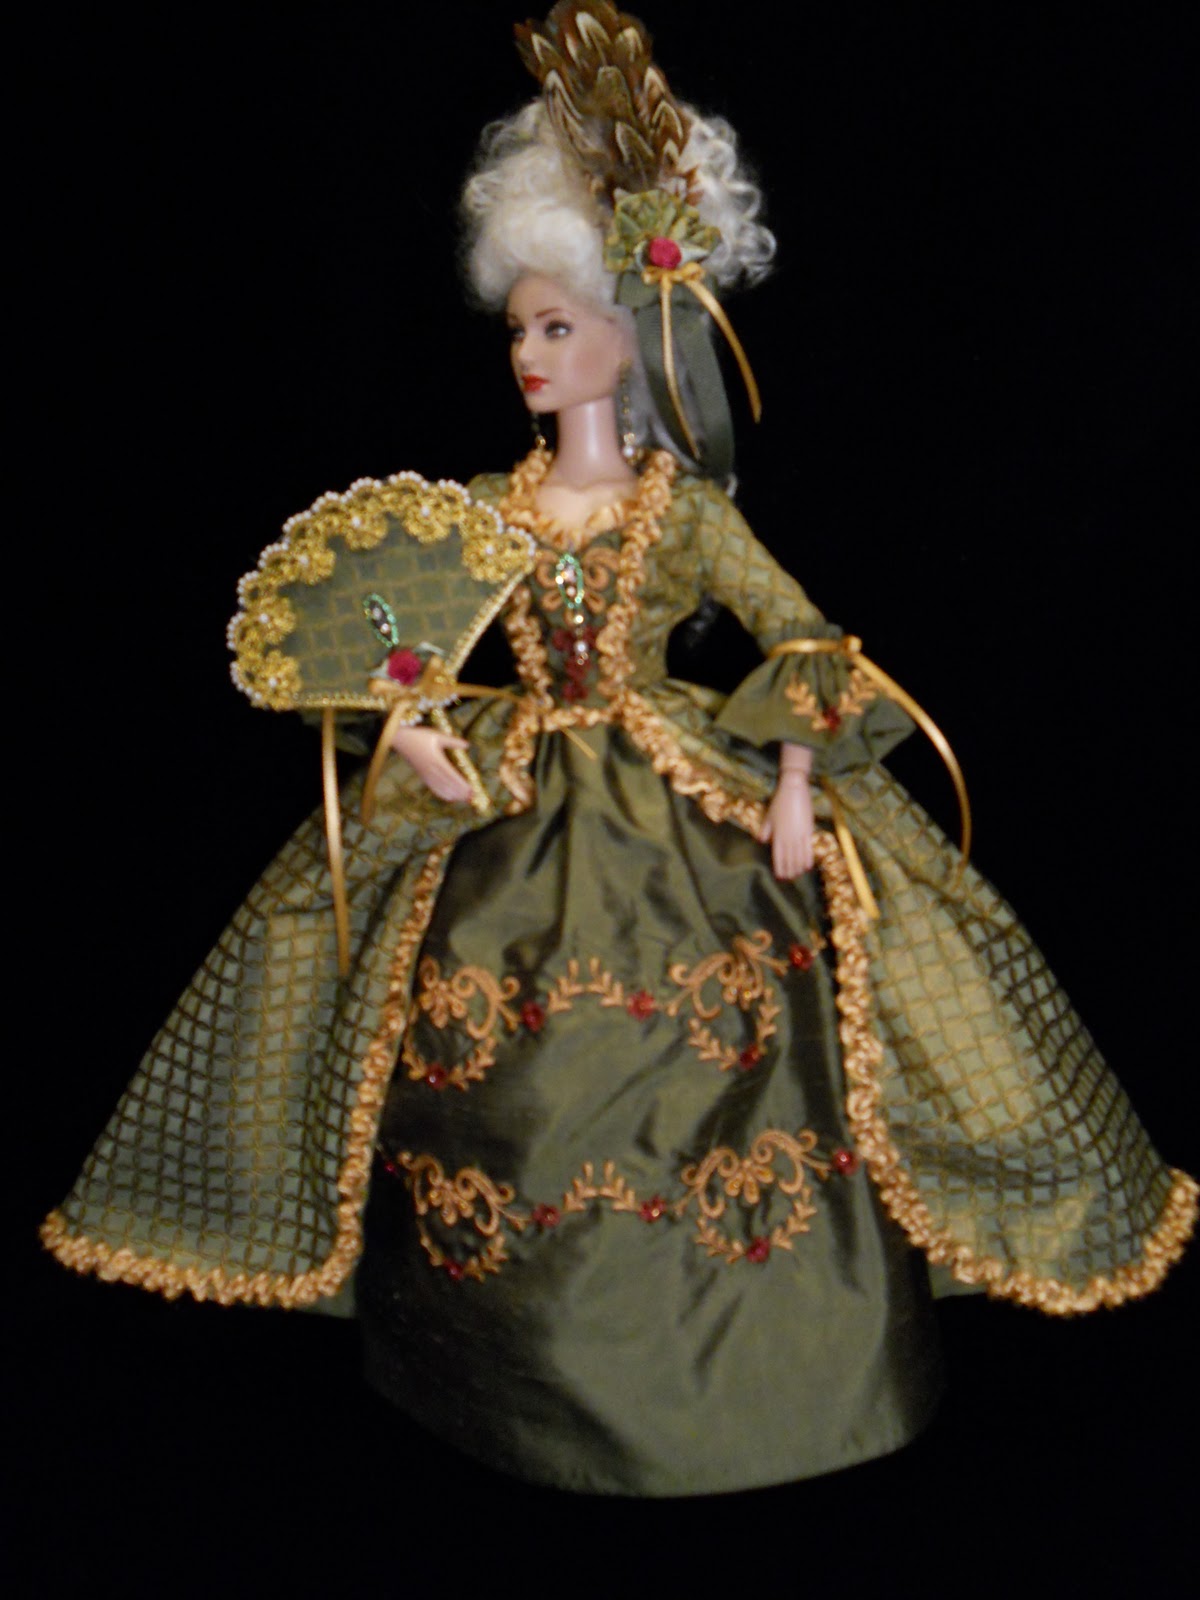 Платье для средней куклы. Куклы в стиле рококо. Платья для кукол. Платье для куклы в стиле 18 века. Куклы в платьях 18 века.